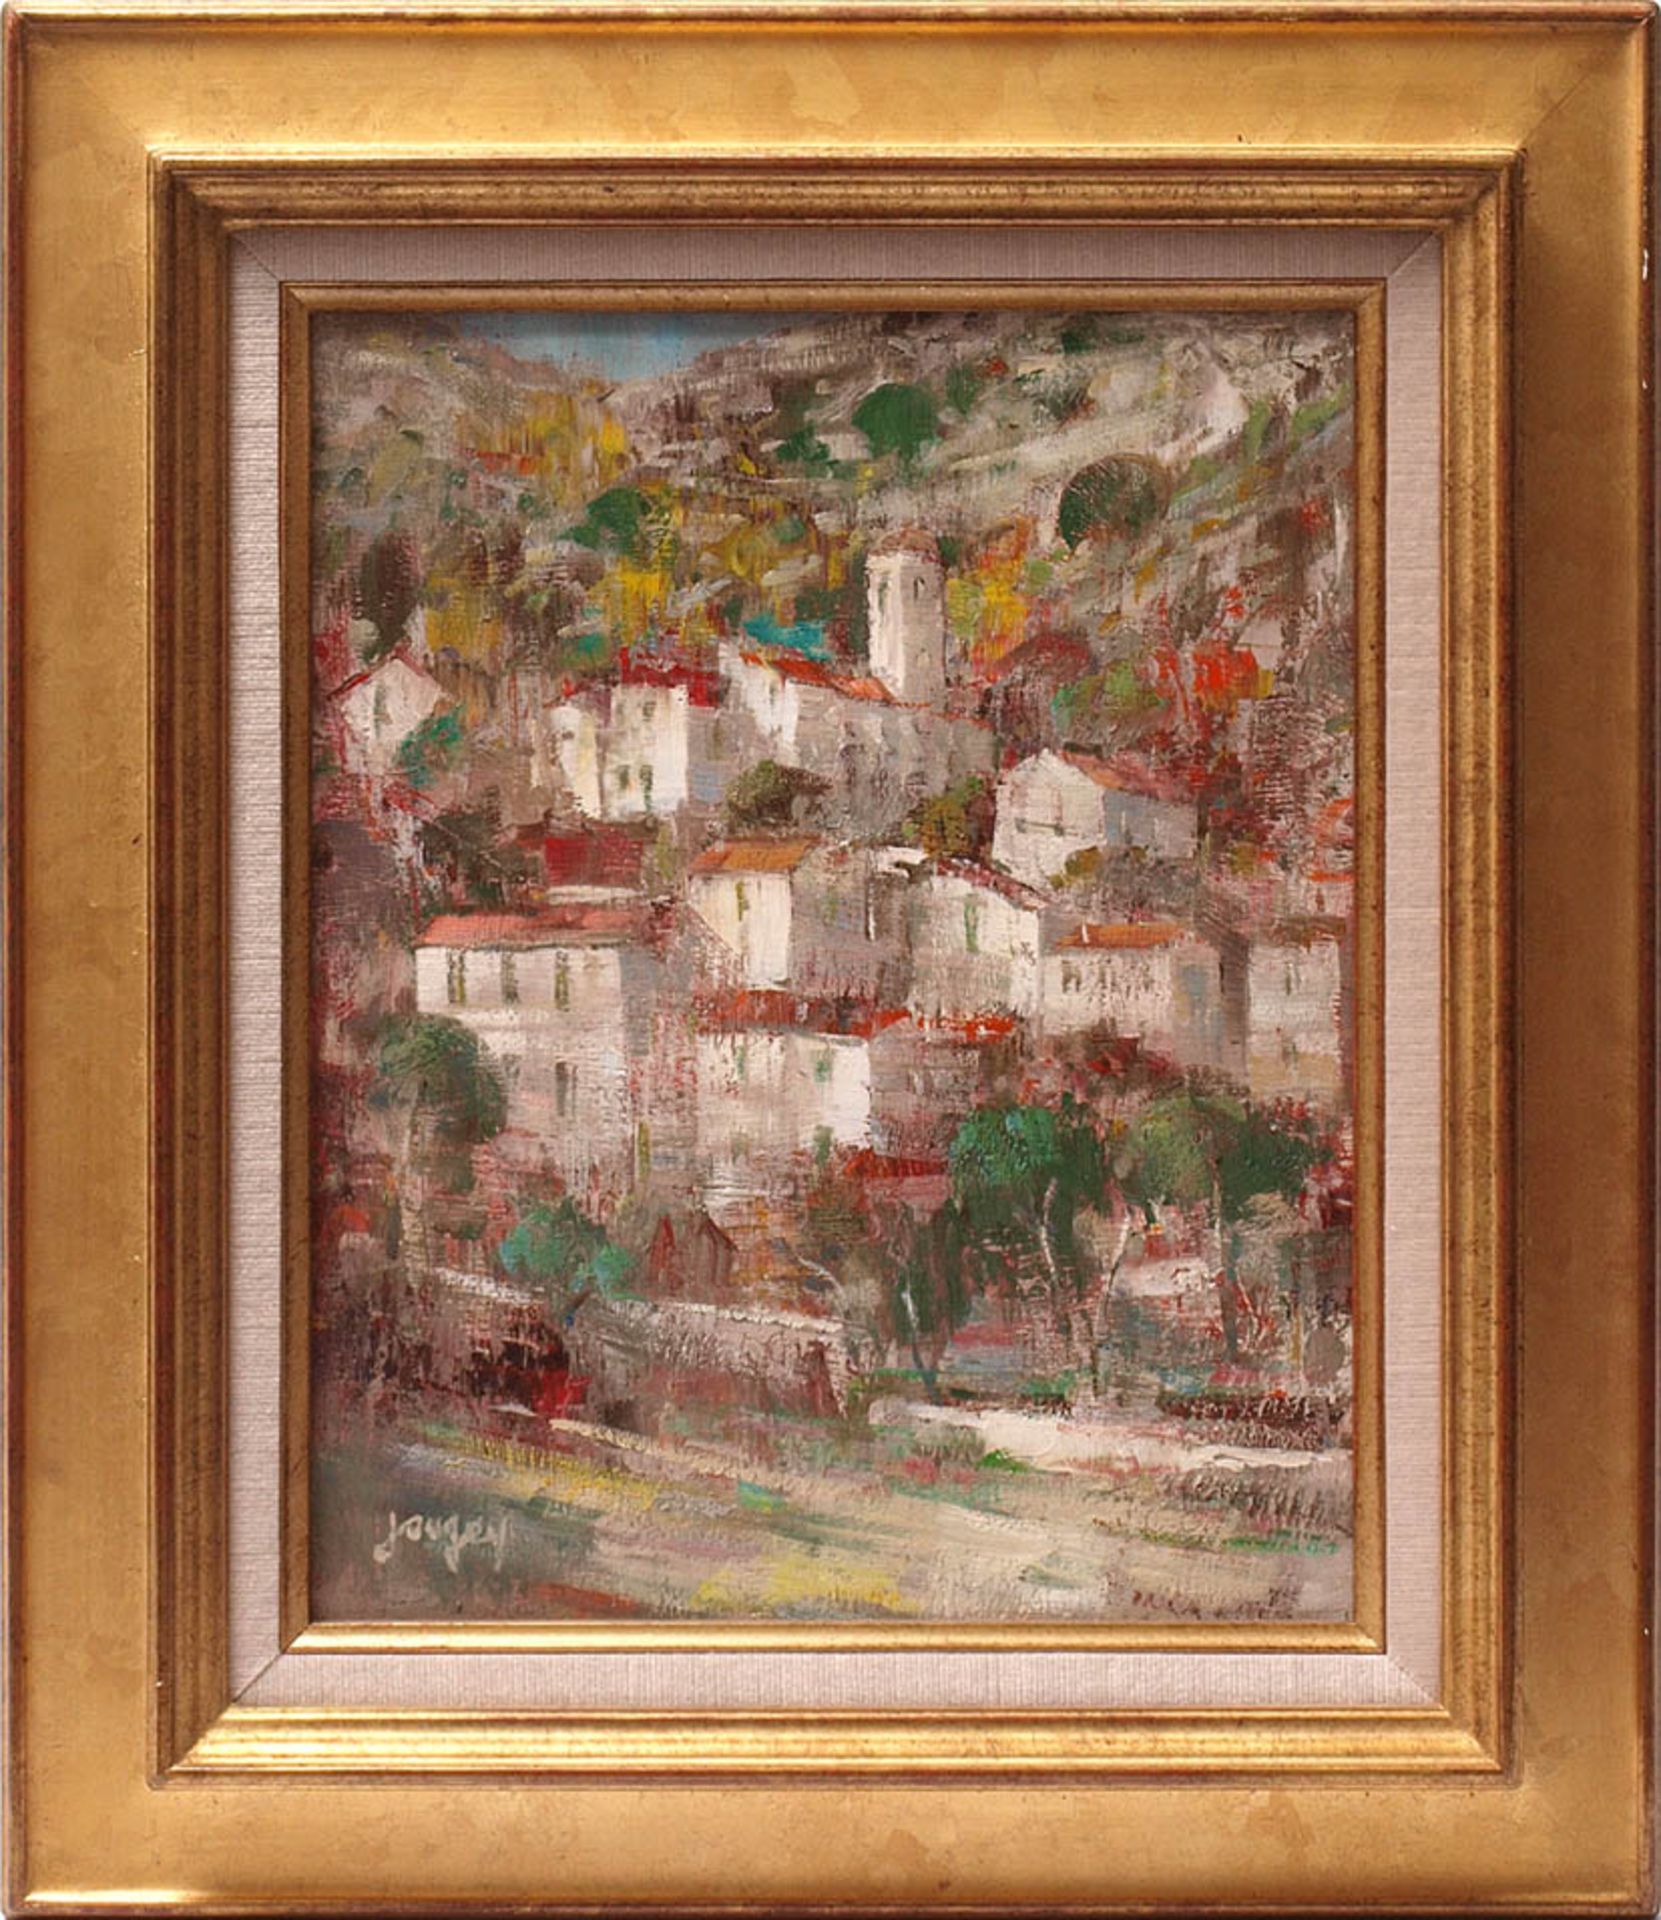 Jaugey, Daniel, geb. 1929Kleines Dorf am Hang. Impressionistische Bildauffassung. Öl/Lwd., links